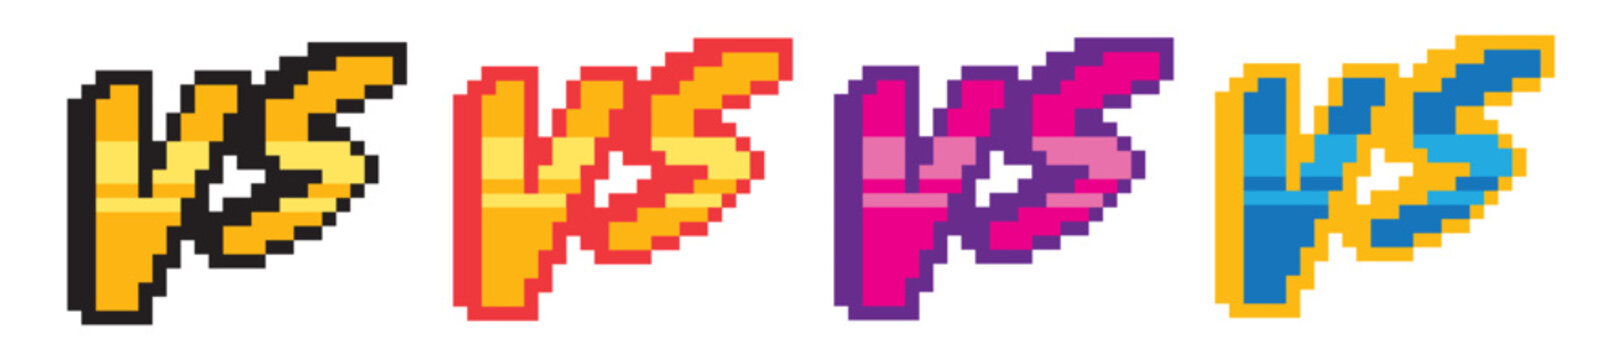 Versus screen, design for logo, web, mobile app. Game tournament achievement emblem. Pixel art icons set. 8-bit. Game assets. Vector Illustration. Vector Graphic. EPS 10